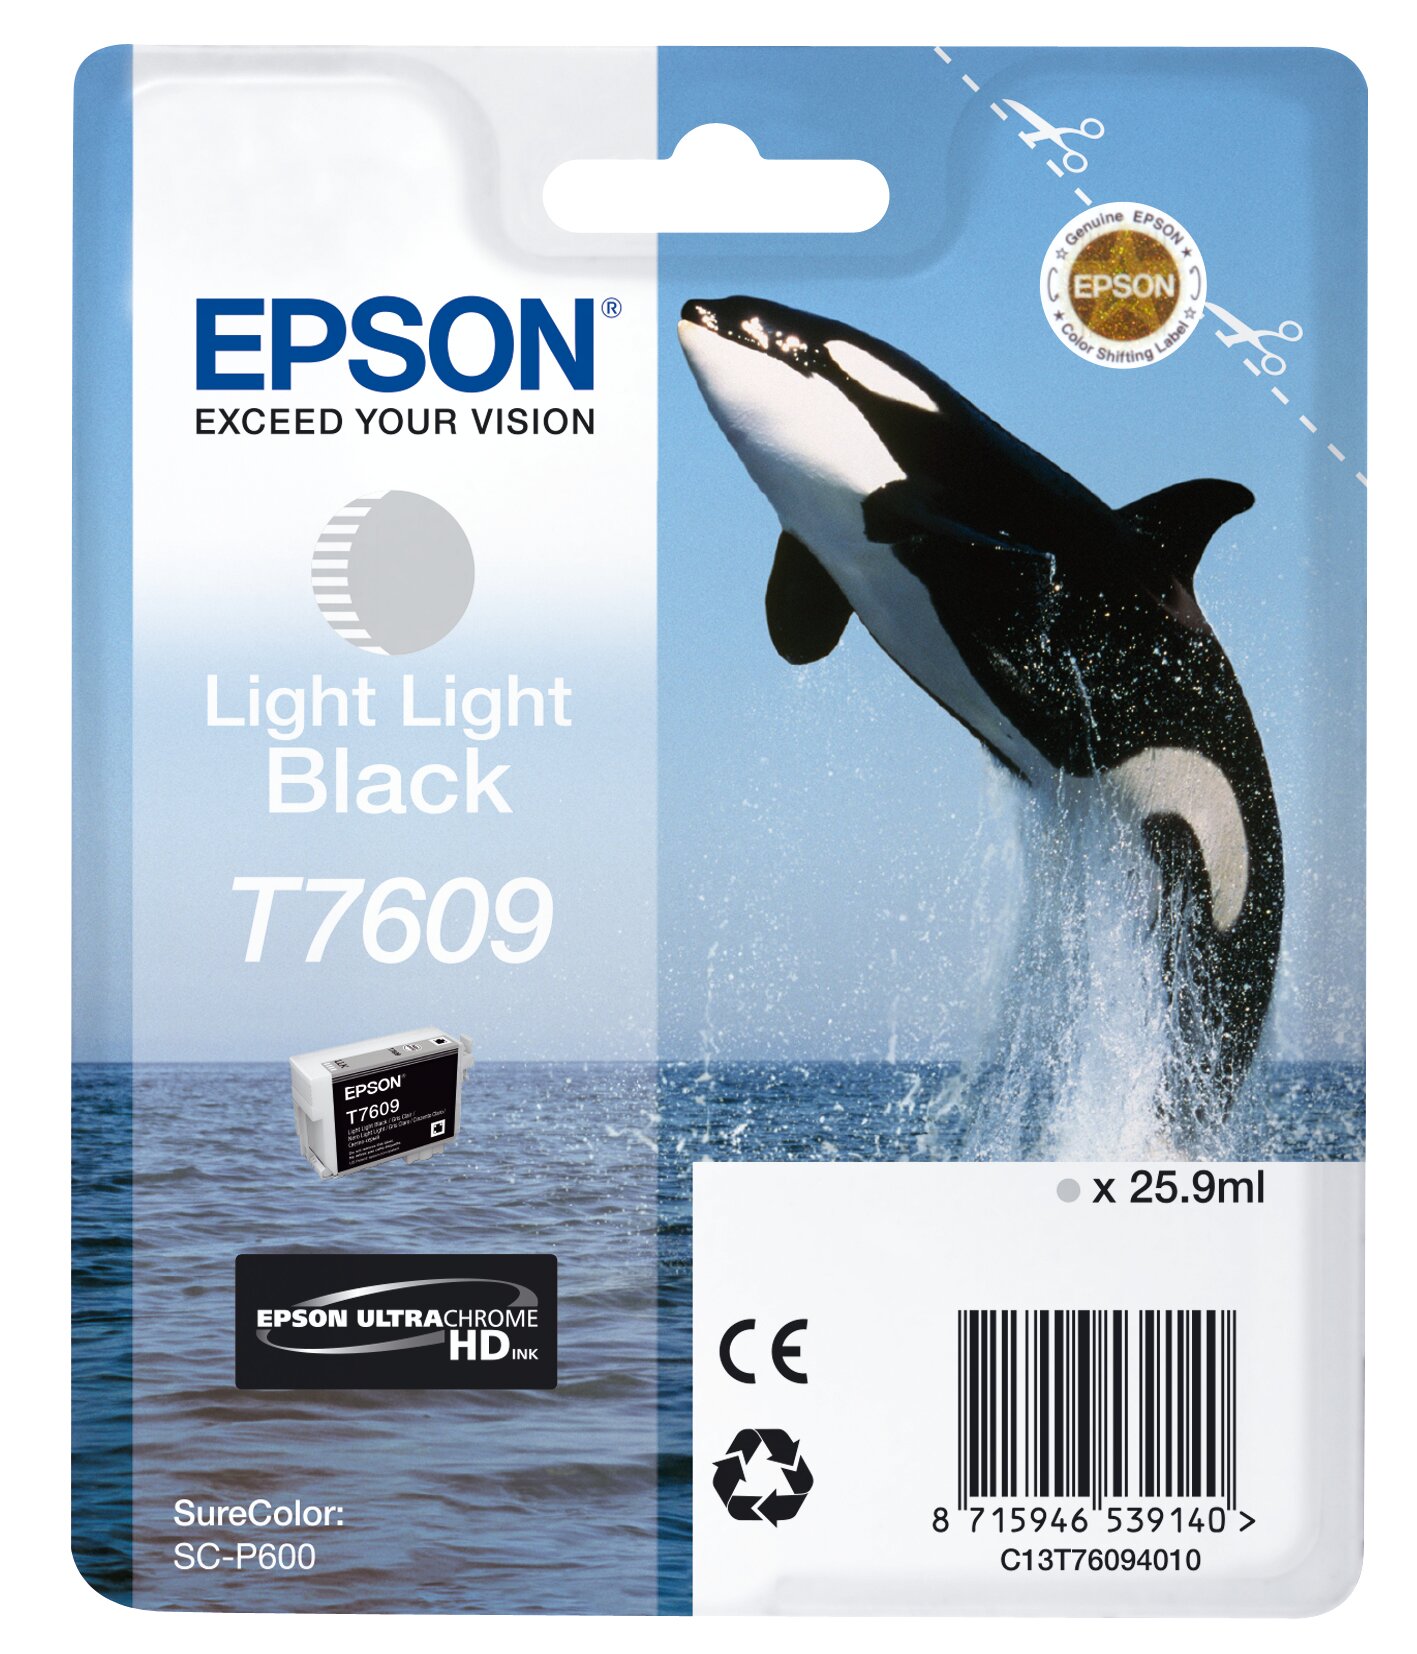 Epson SC-P600 cartridge light light black T7609 inkjet